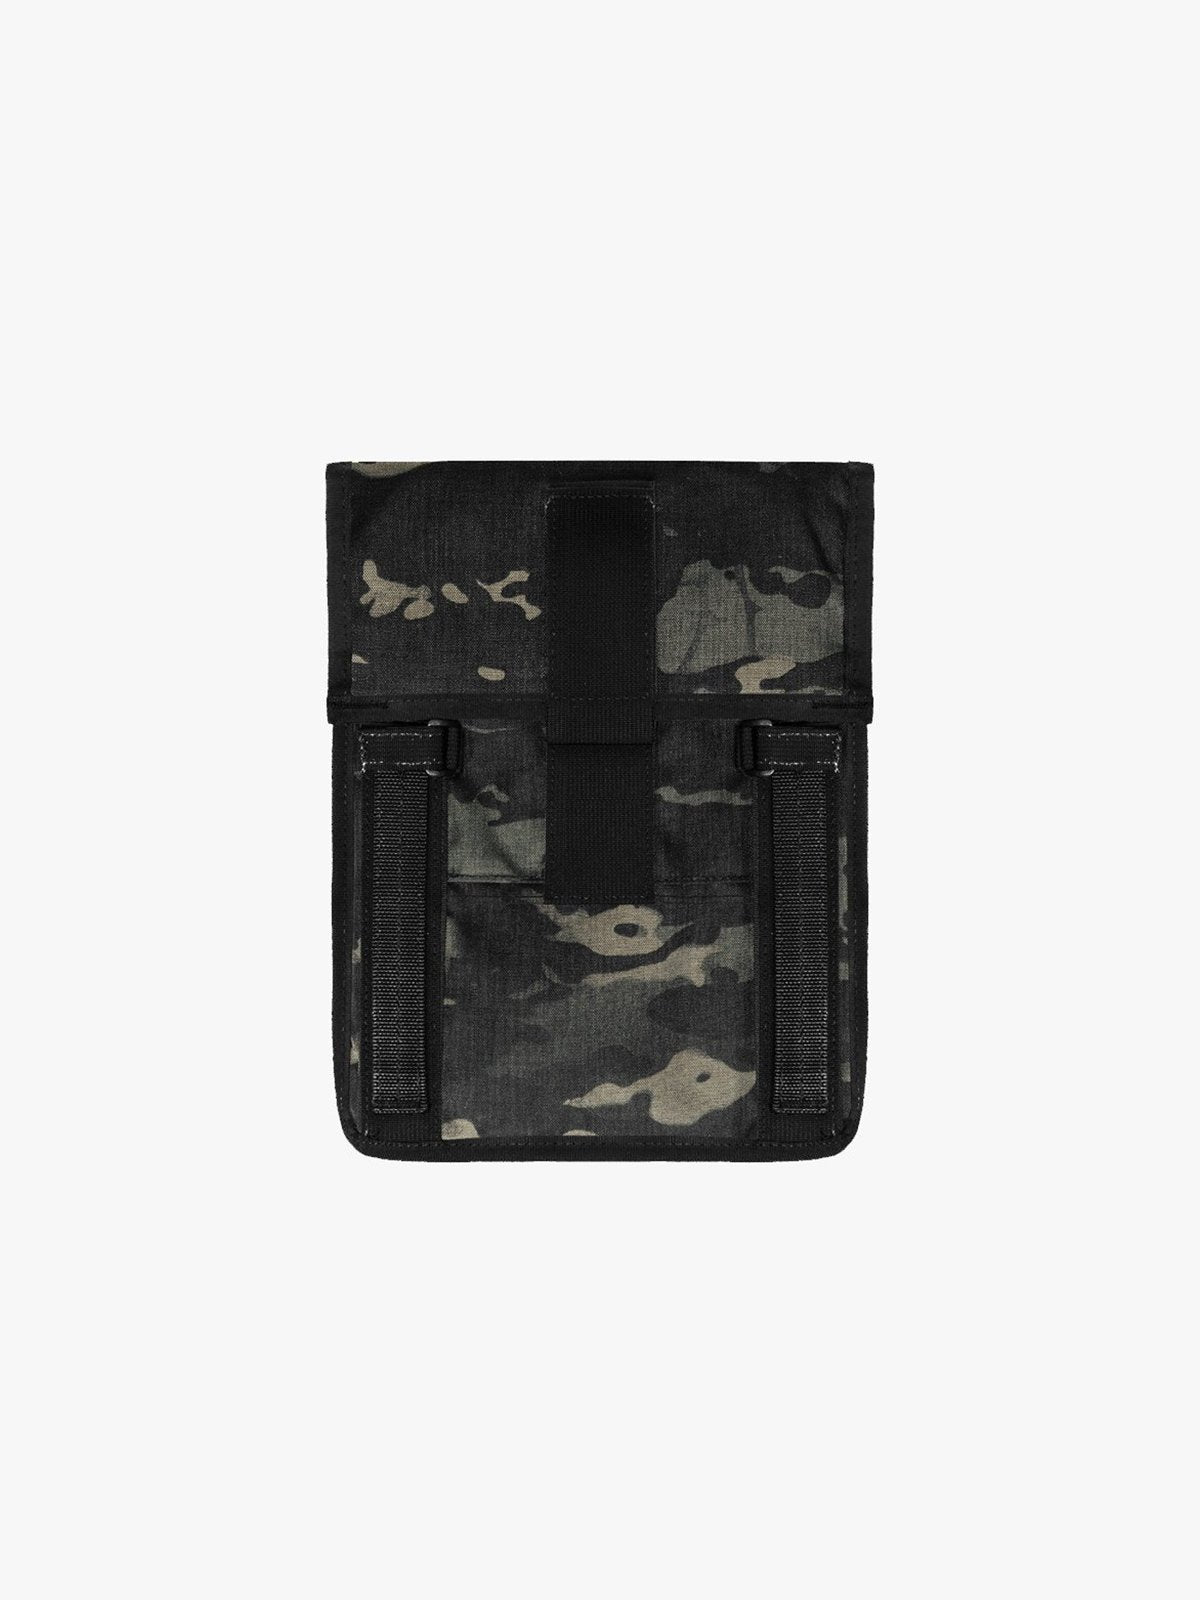 Arkiv Folio by Mission Workshop - Weersbestendige tassen & technische kleding - San Francisco & Los Angeles - Gemaakt om lang mee te gaan - Voor altijd gegarandeerd